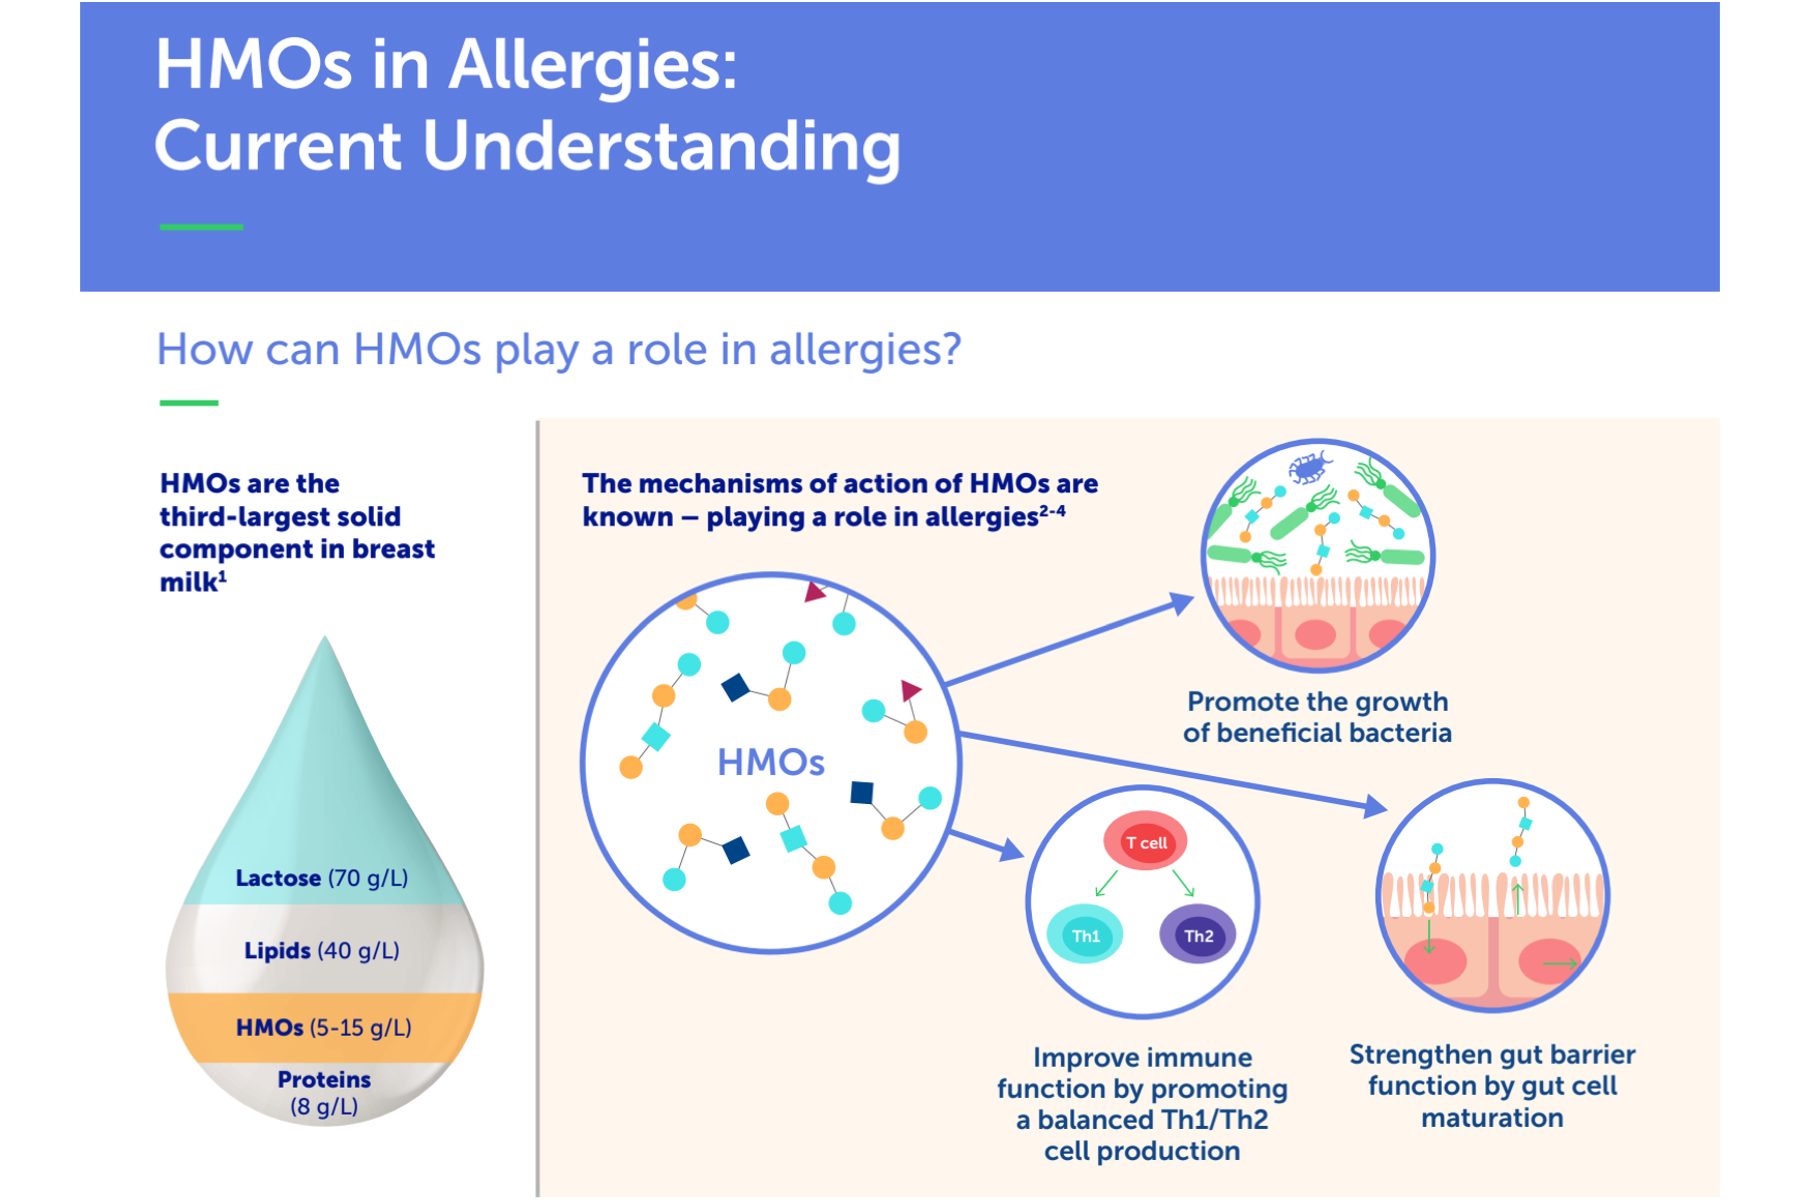 HMOs in Allergies: Current Understanding